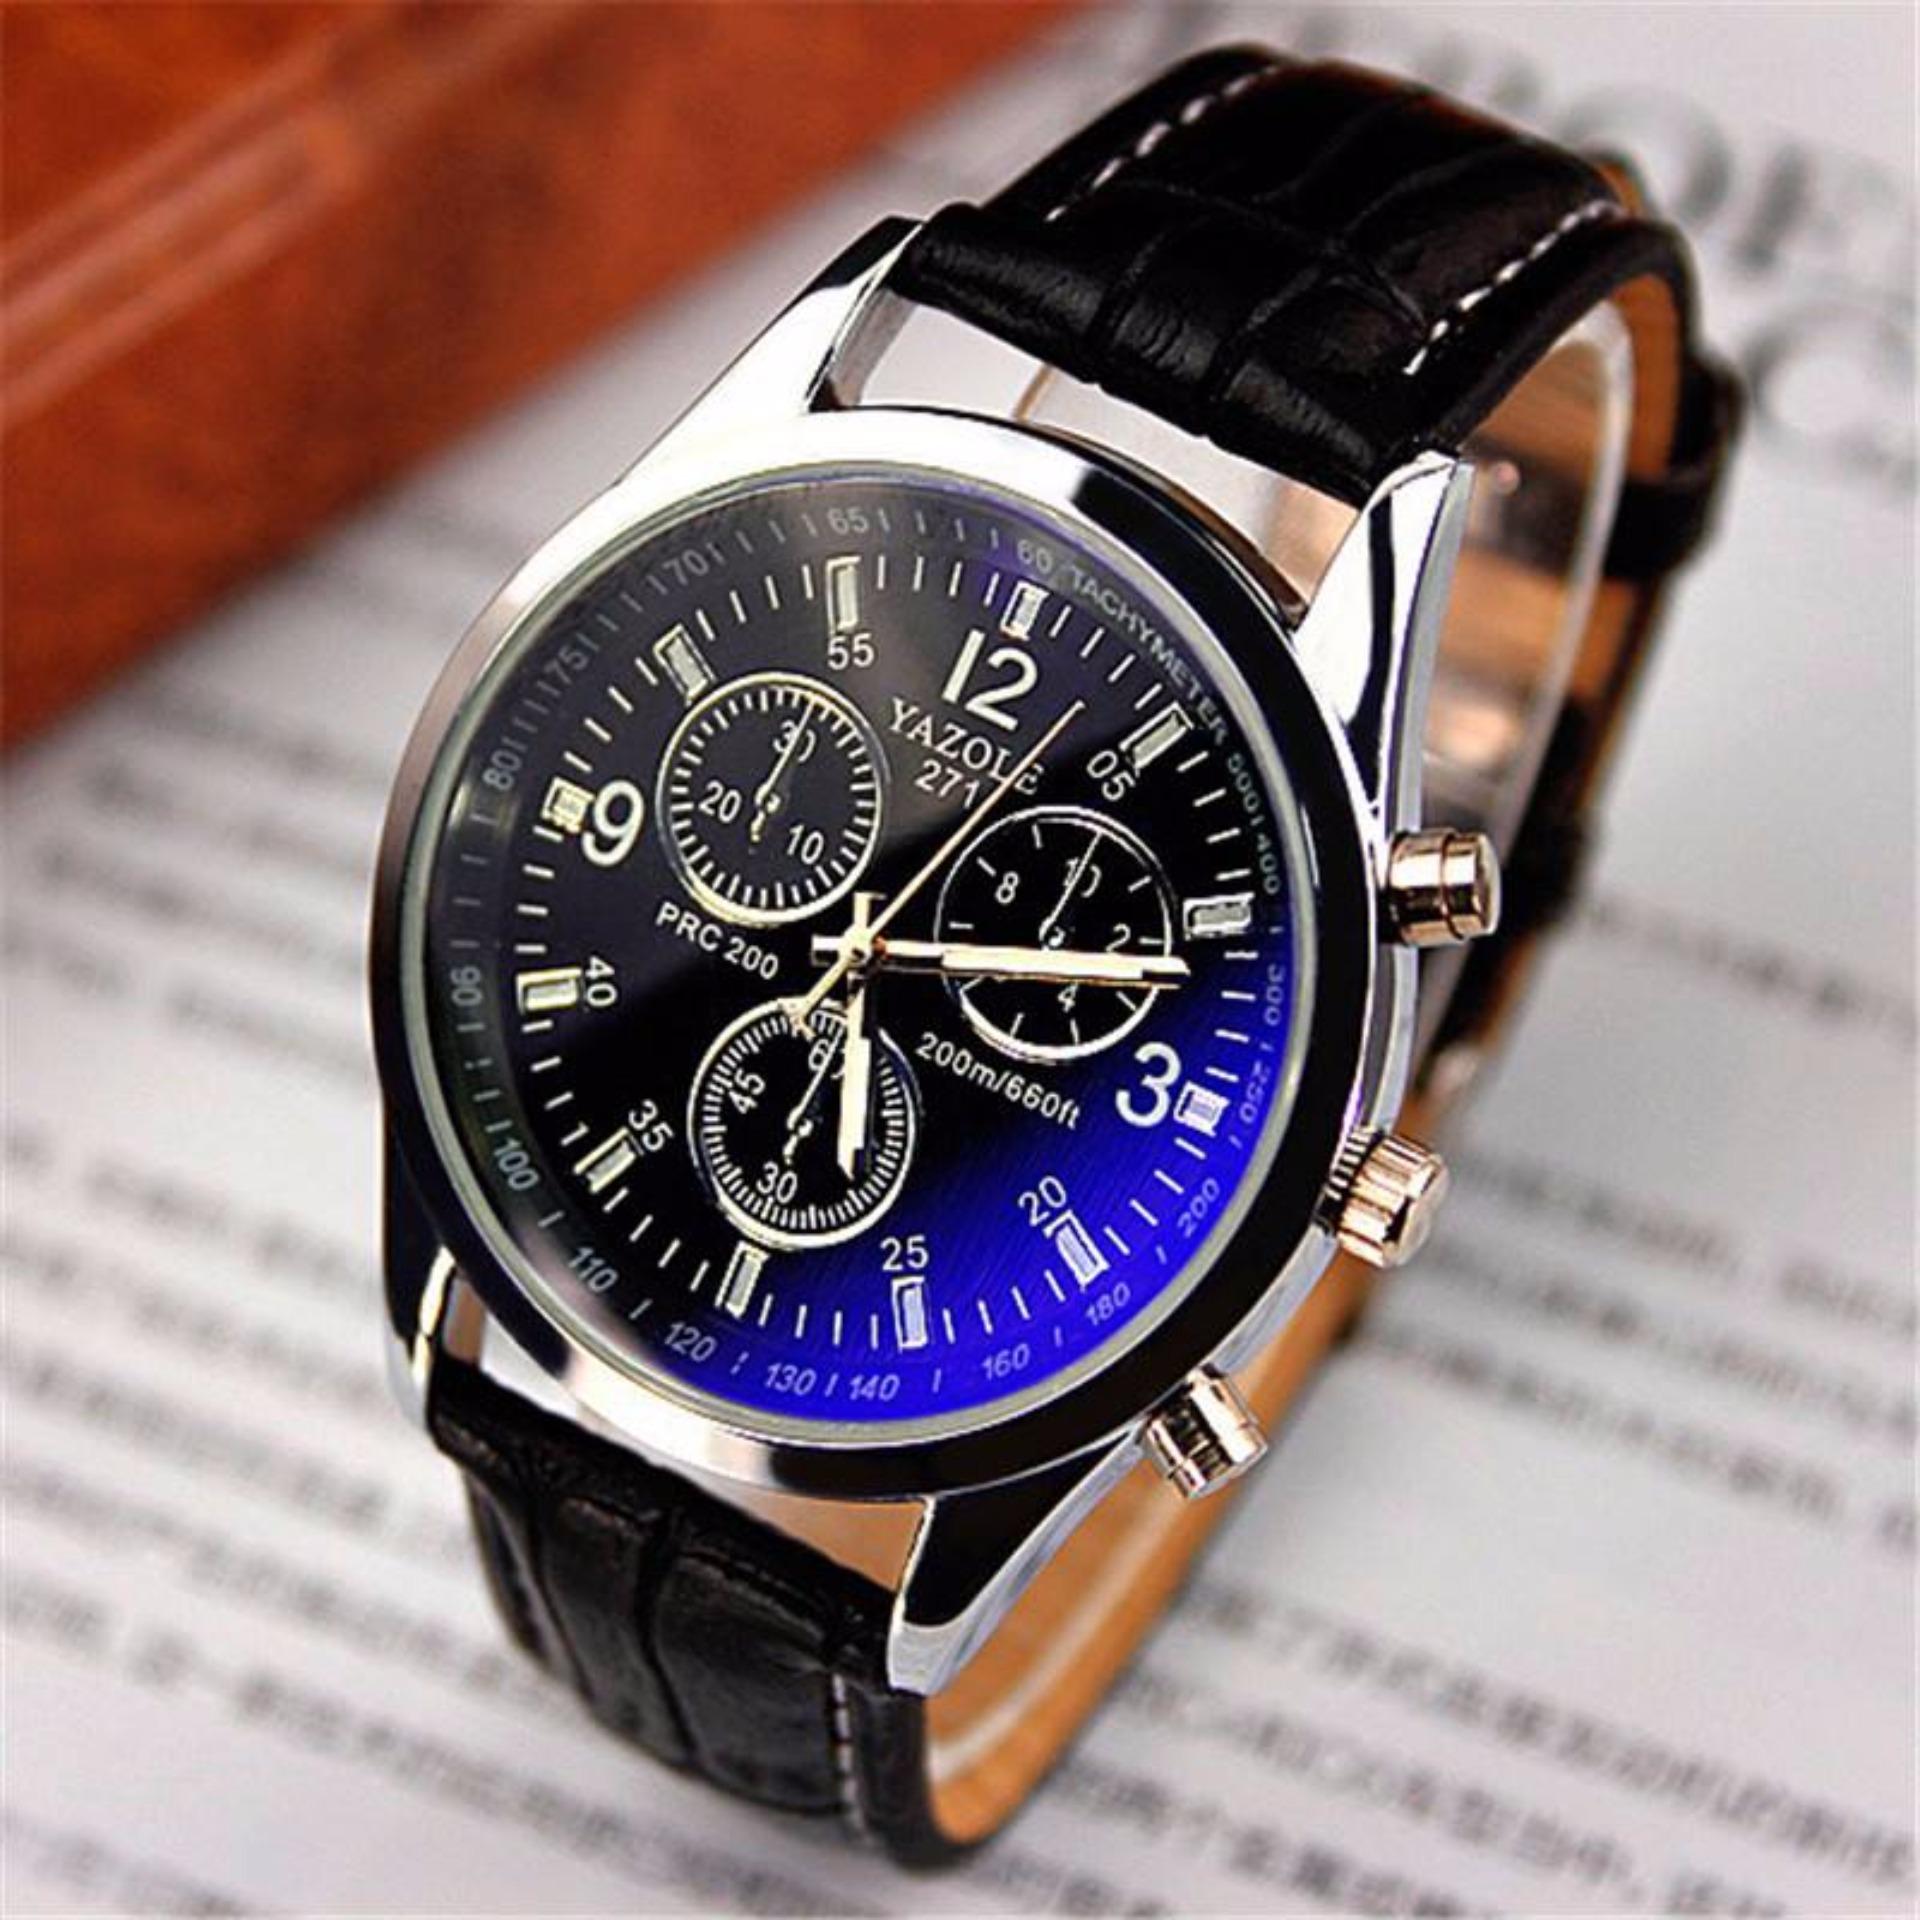 Недорогие часы для мужчин. Часы YAZOLE Quartz. Гуардо часы11675f. Часы мужские наручные Fashion Quartz. Механические часы для мужчин.